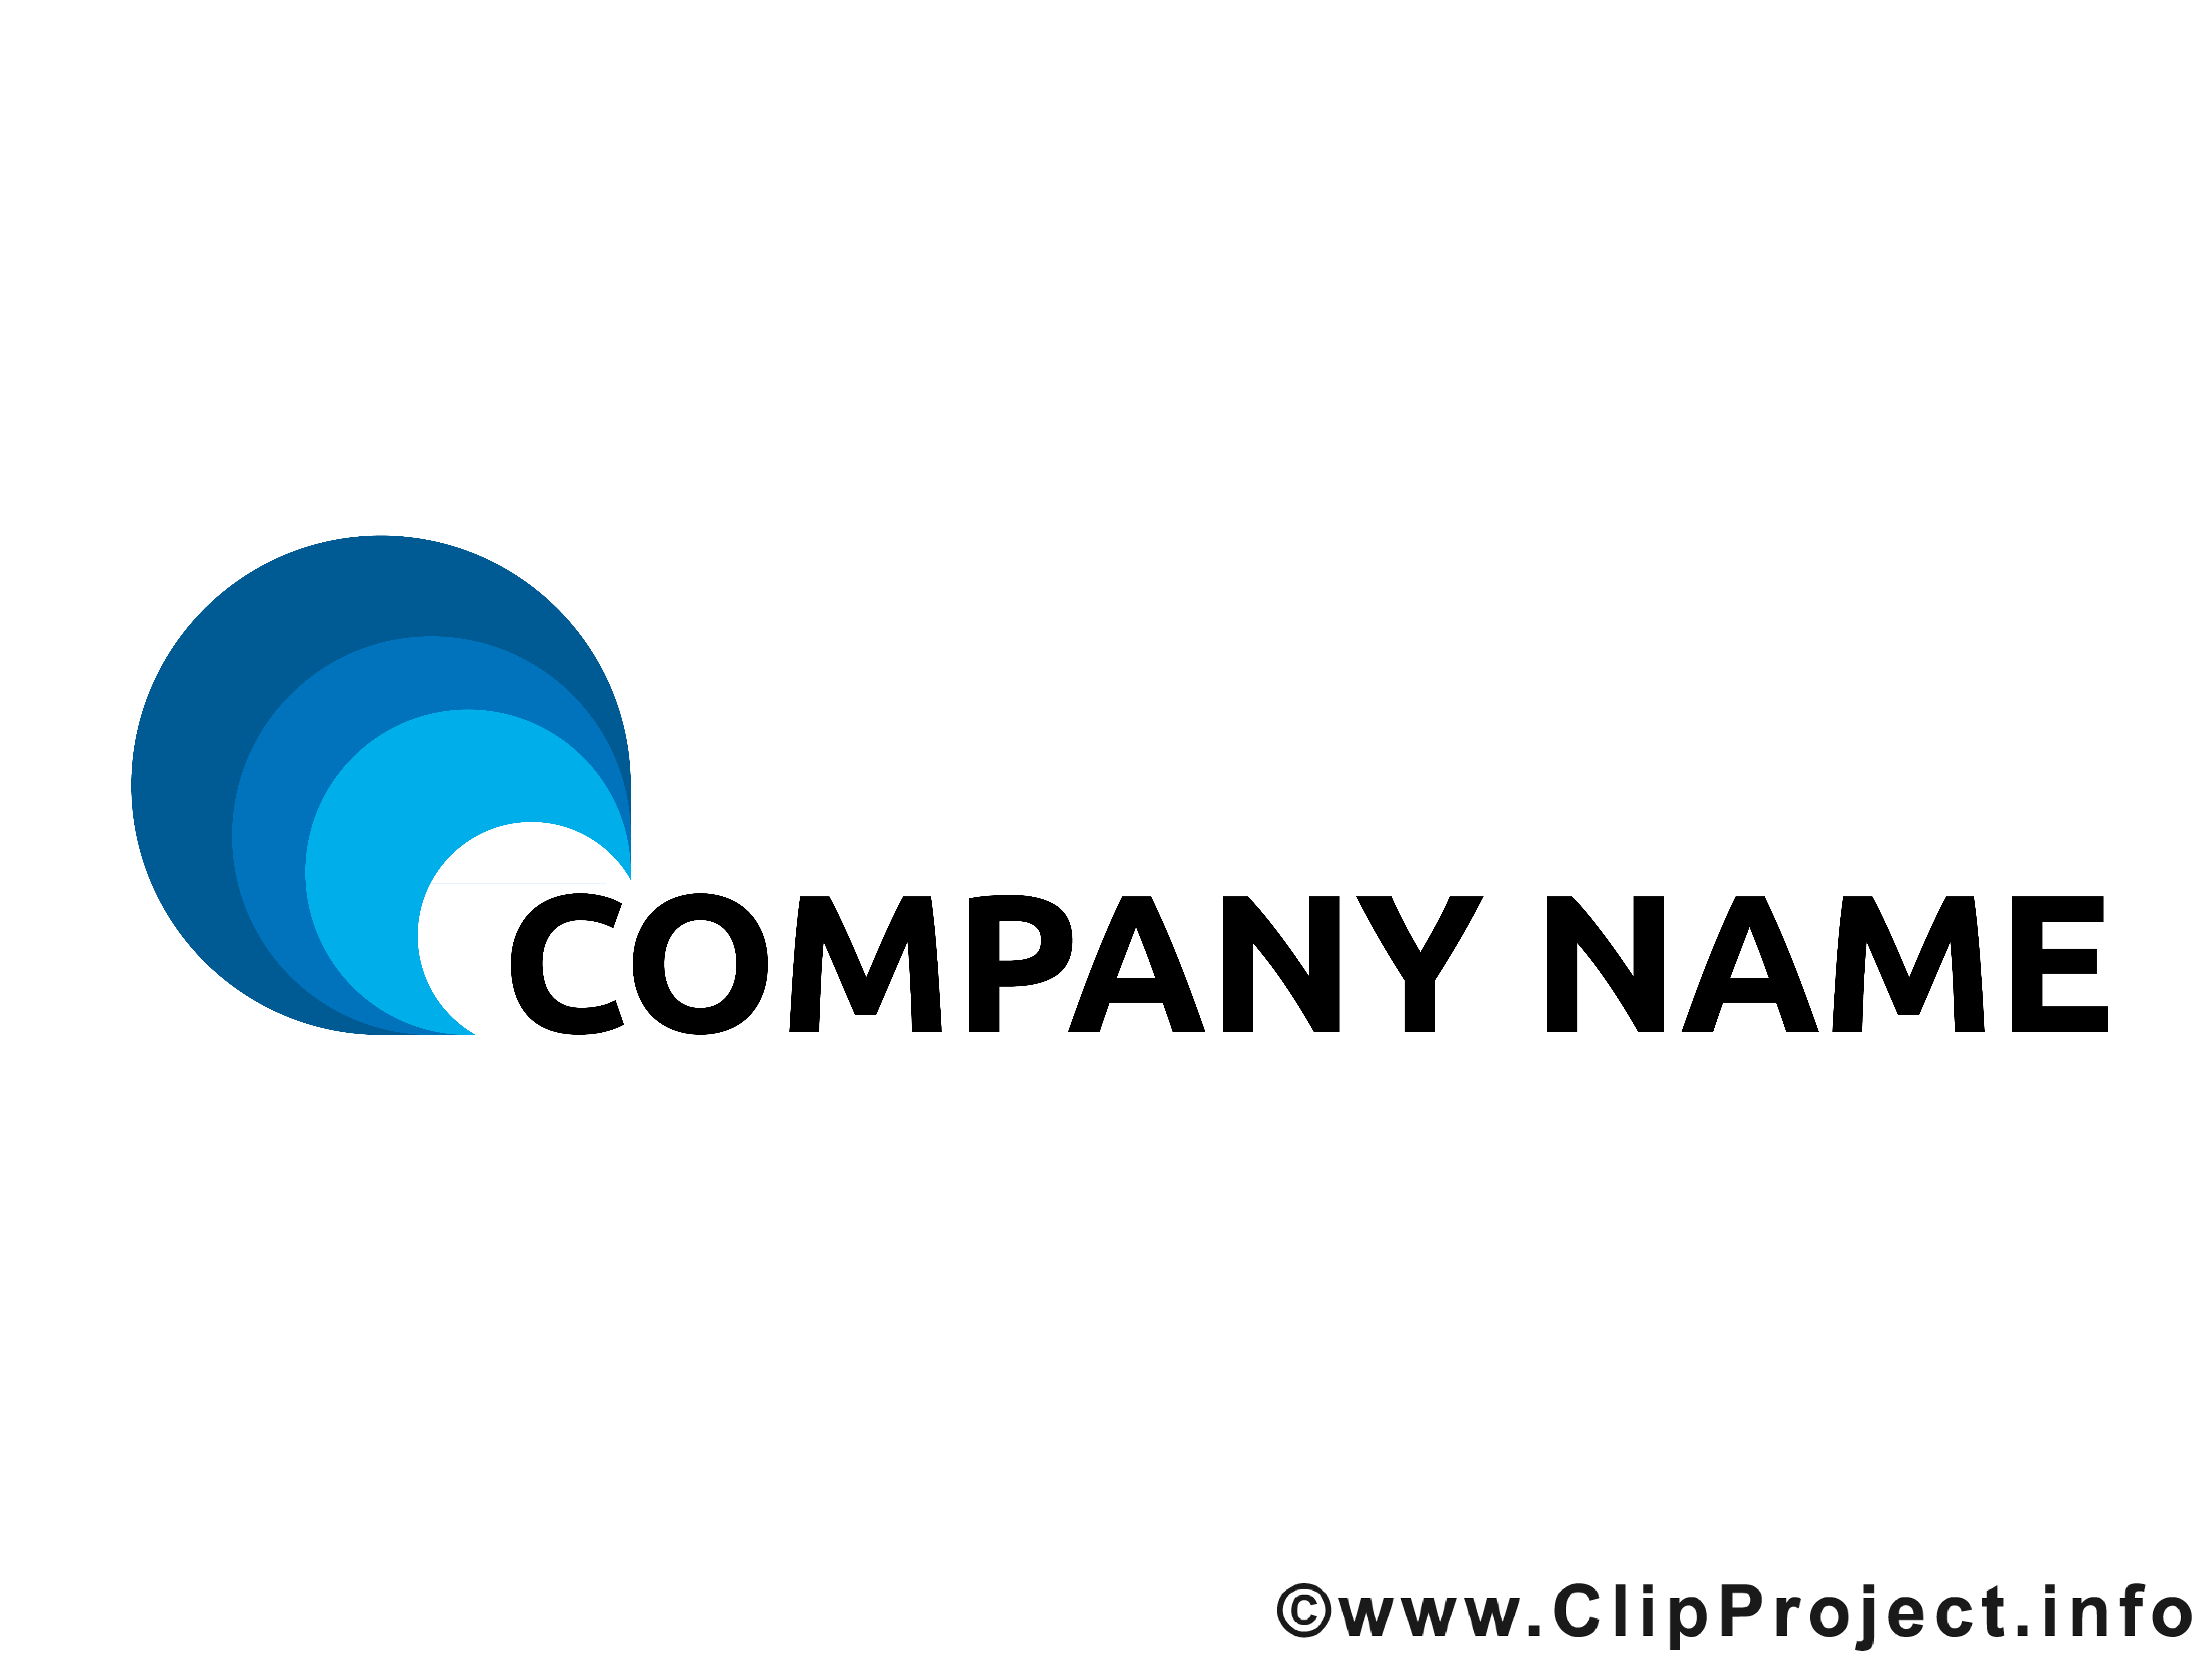 Éléments cliparts gratuis – Logo images